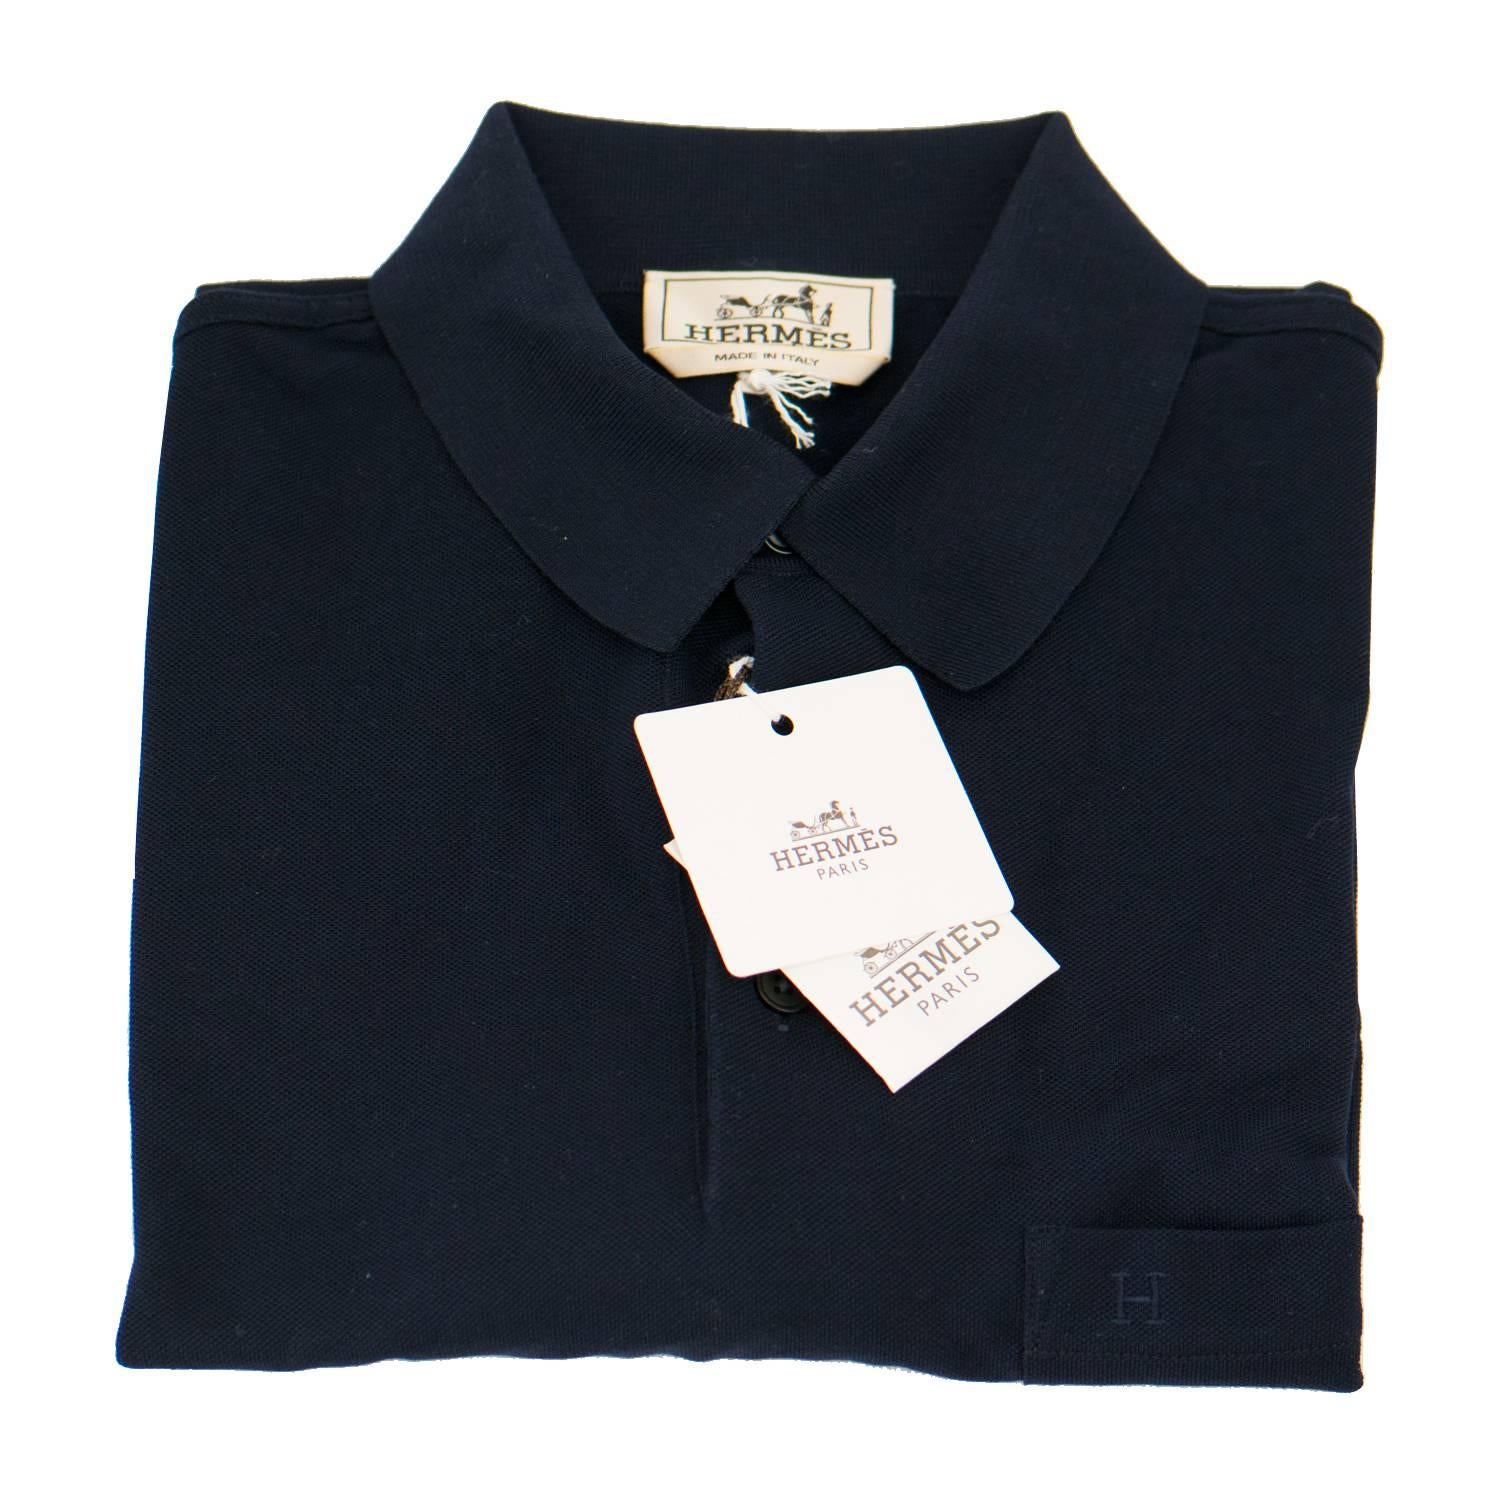 Black Hermes T-Shirt Ras du Cou Pique de Cotton Size M Color Marine 2016. For Sale